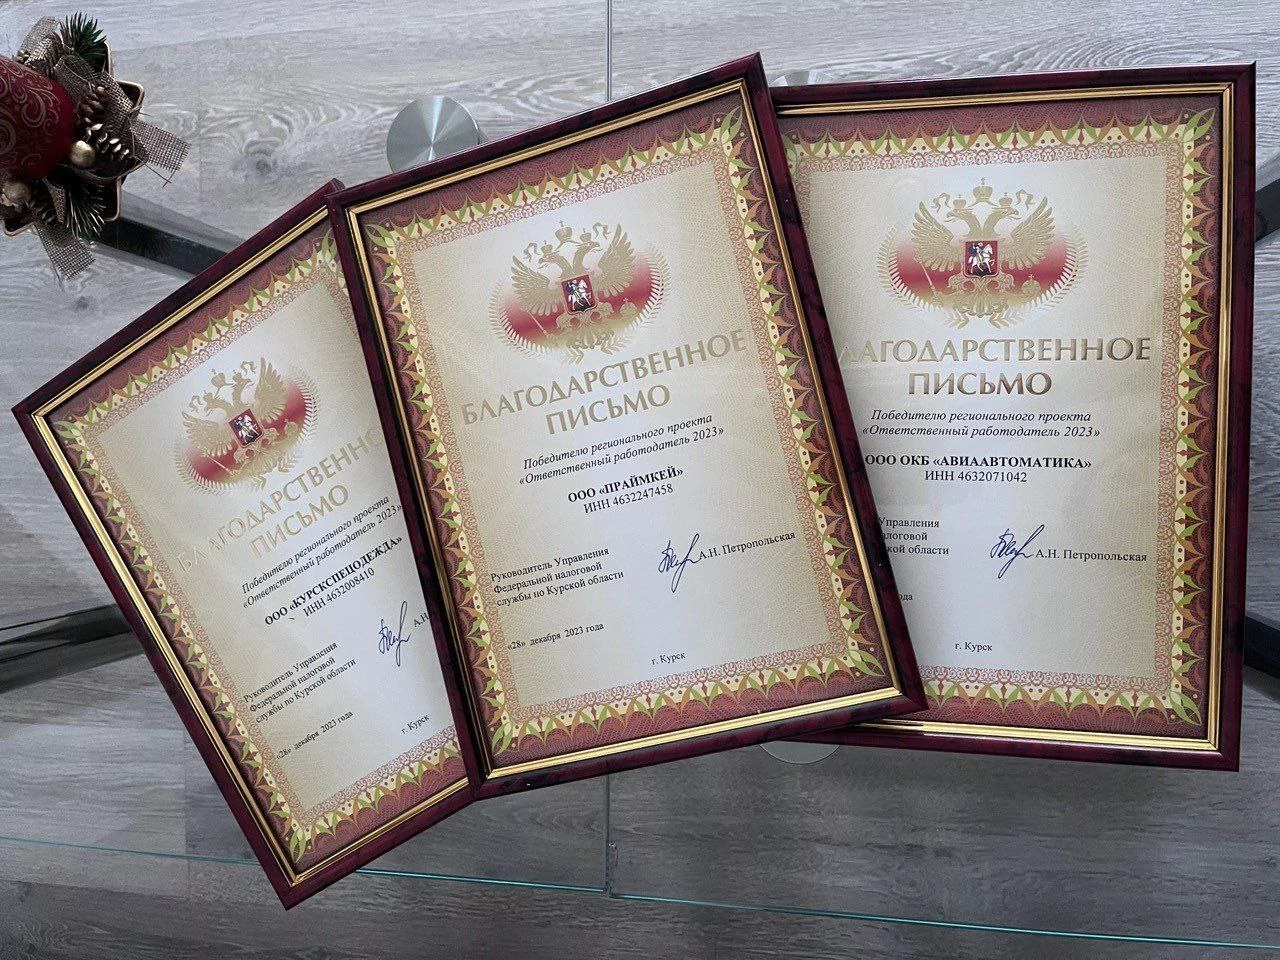 Компания курского делоросса стала победителем проекта «Ответственный работодатель 2023»